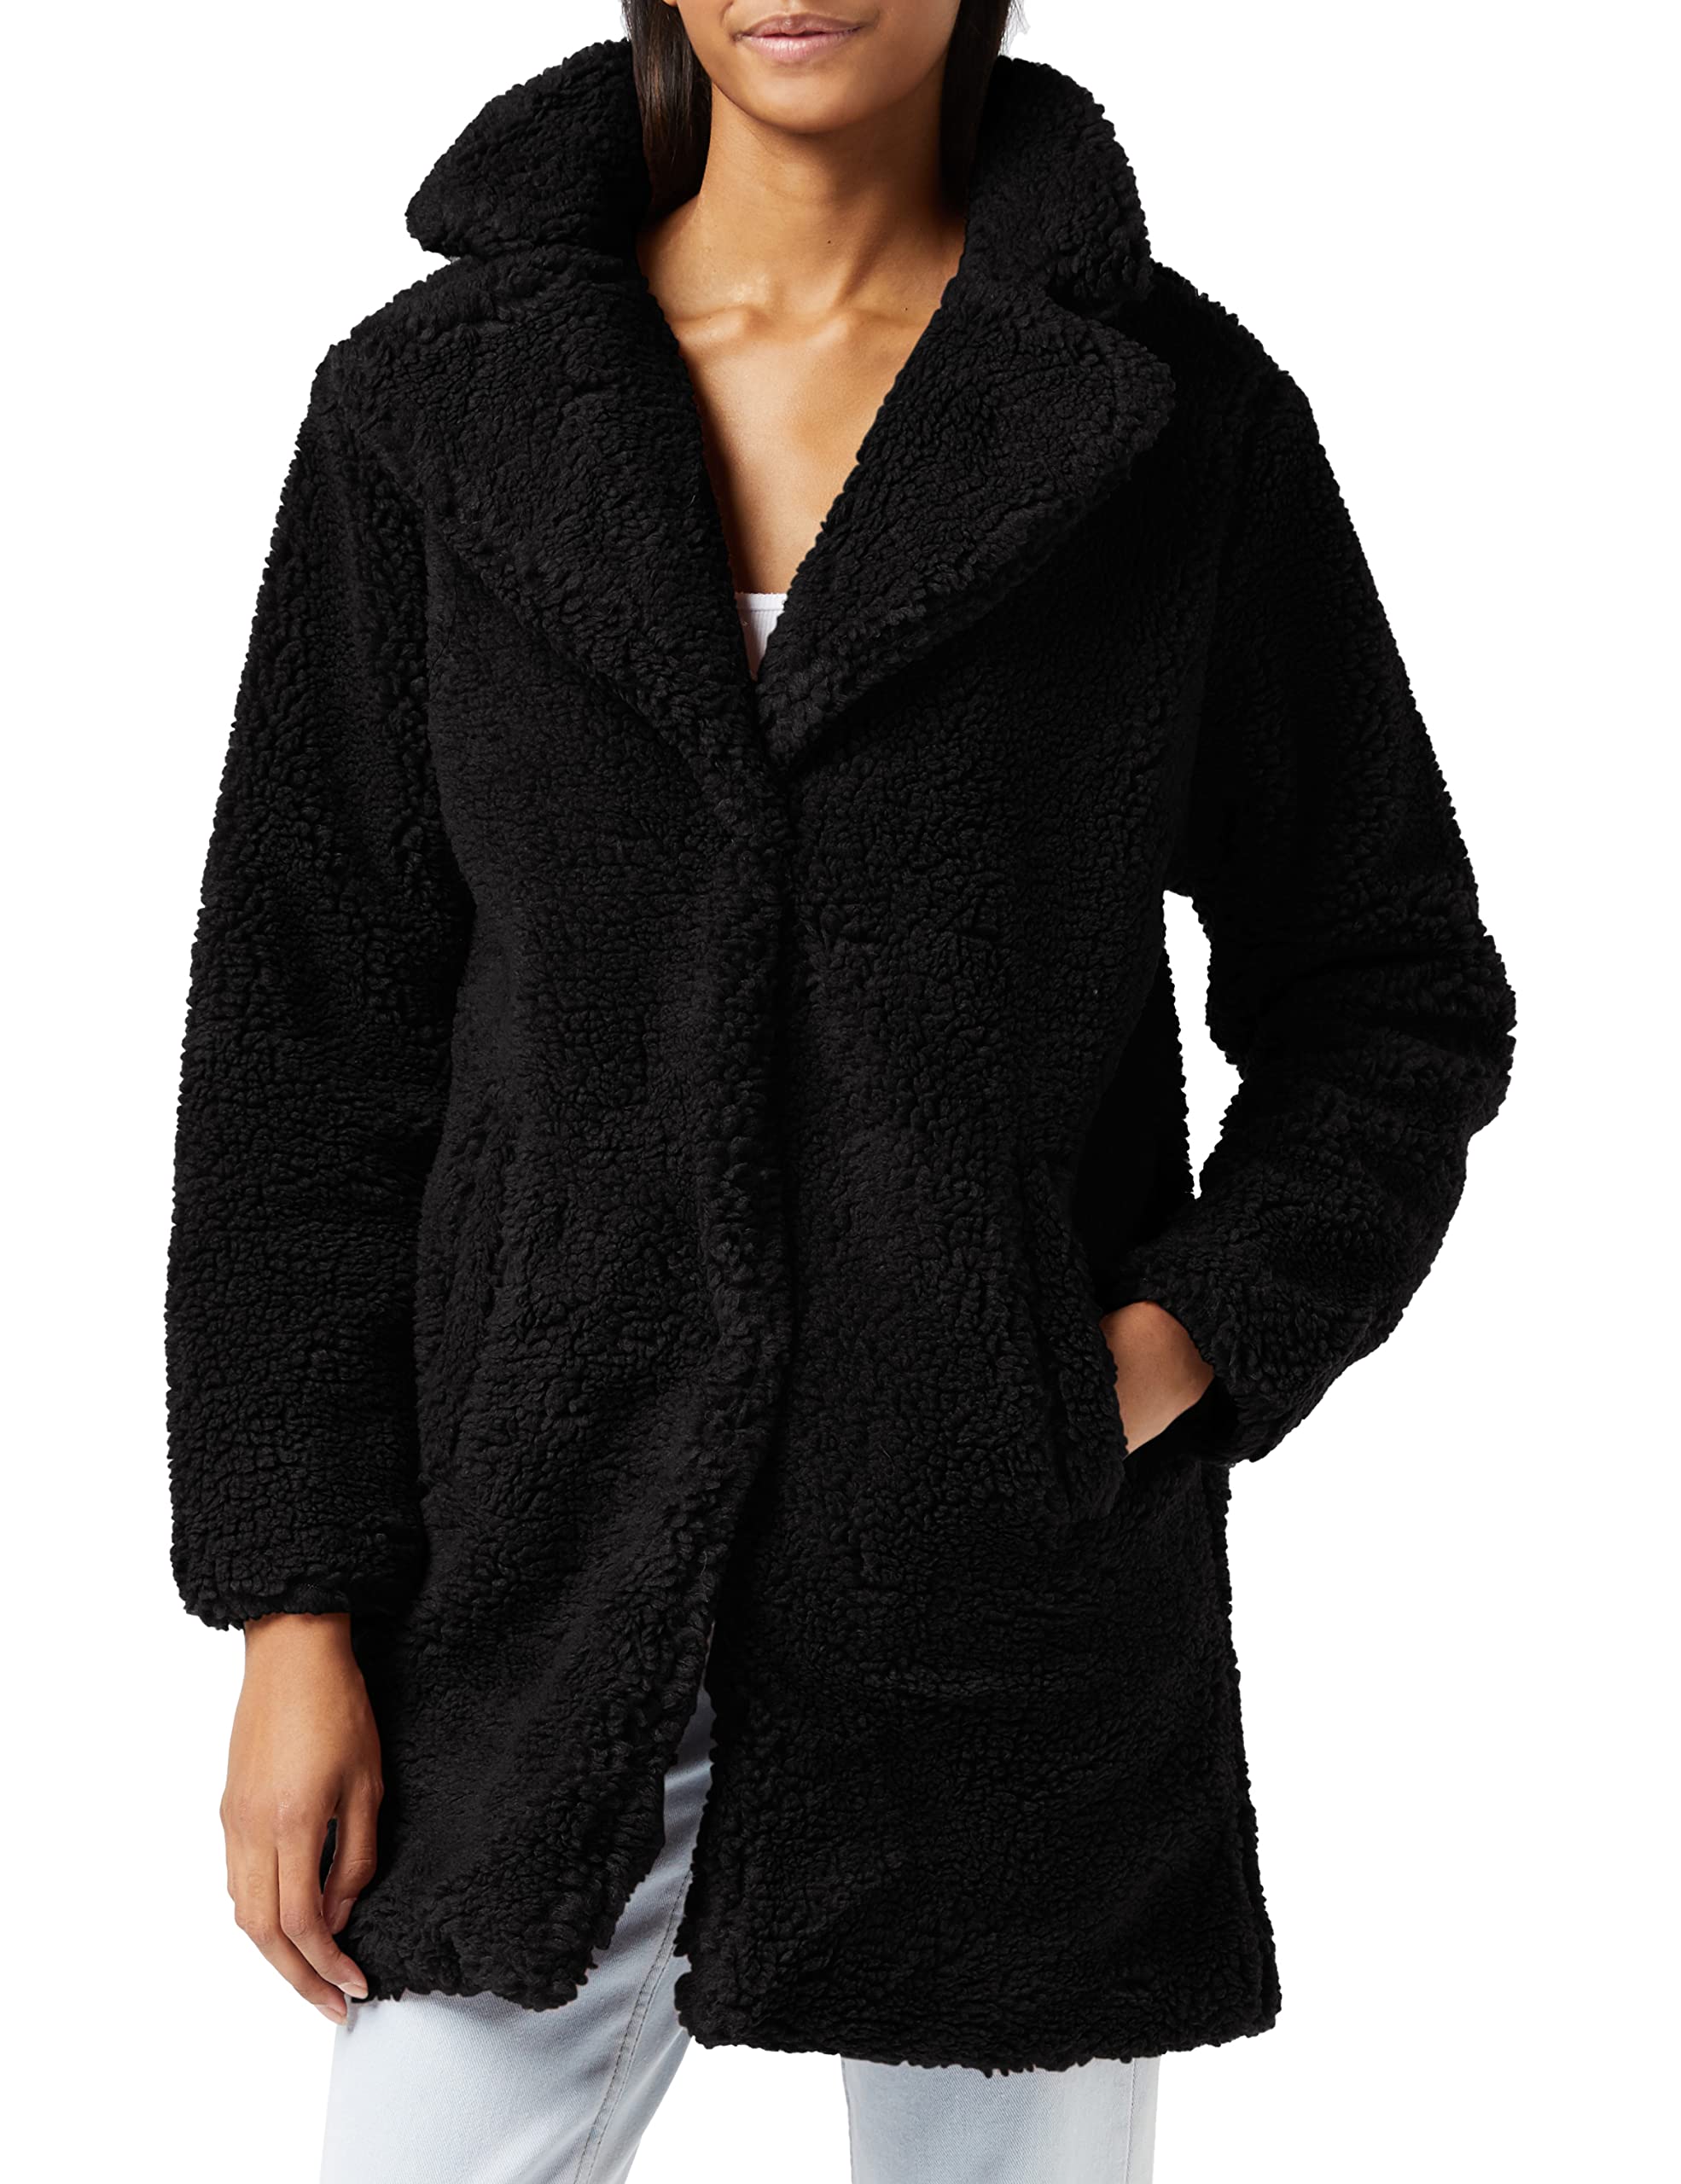 Urban Classics Damen Ladies Oversized Sherpa Coat Mantel, Schwarz (Black 00007), XXX-Large (Herstellergröße: 3XL)